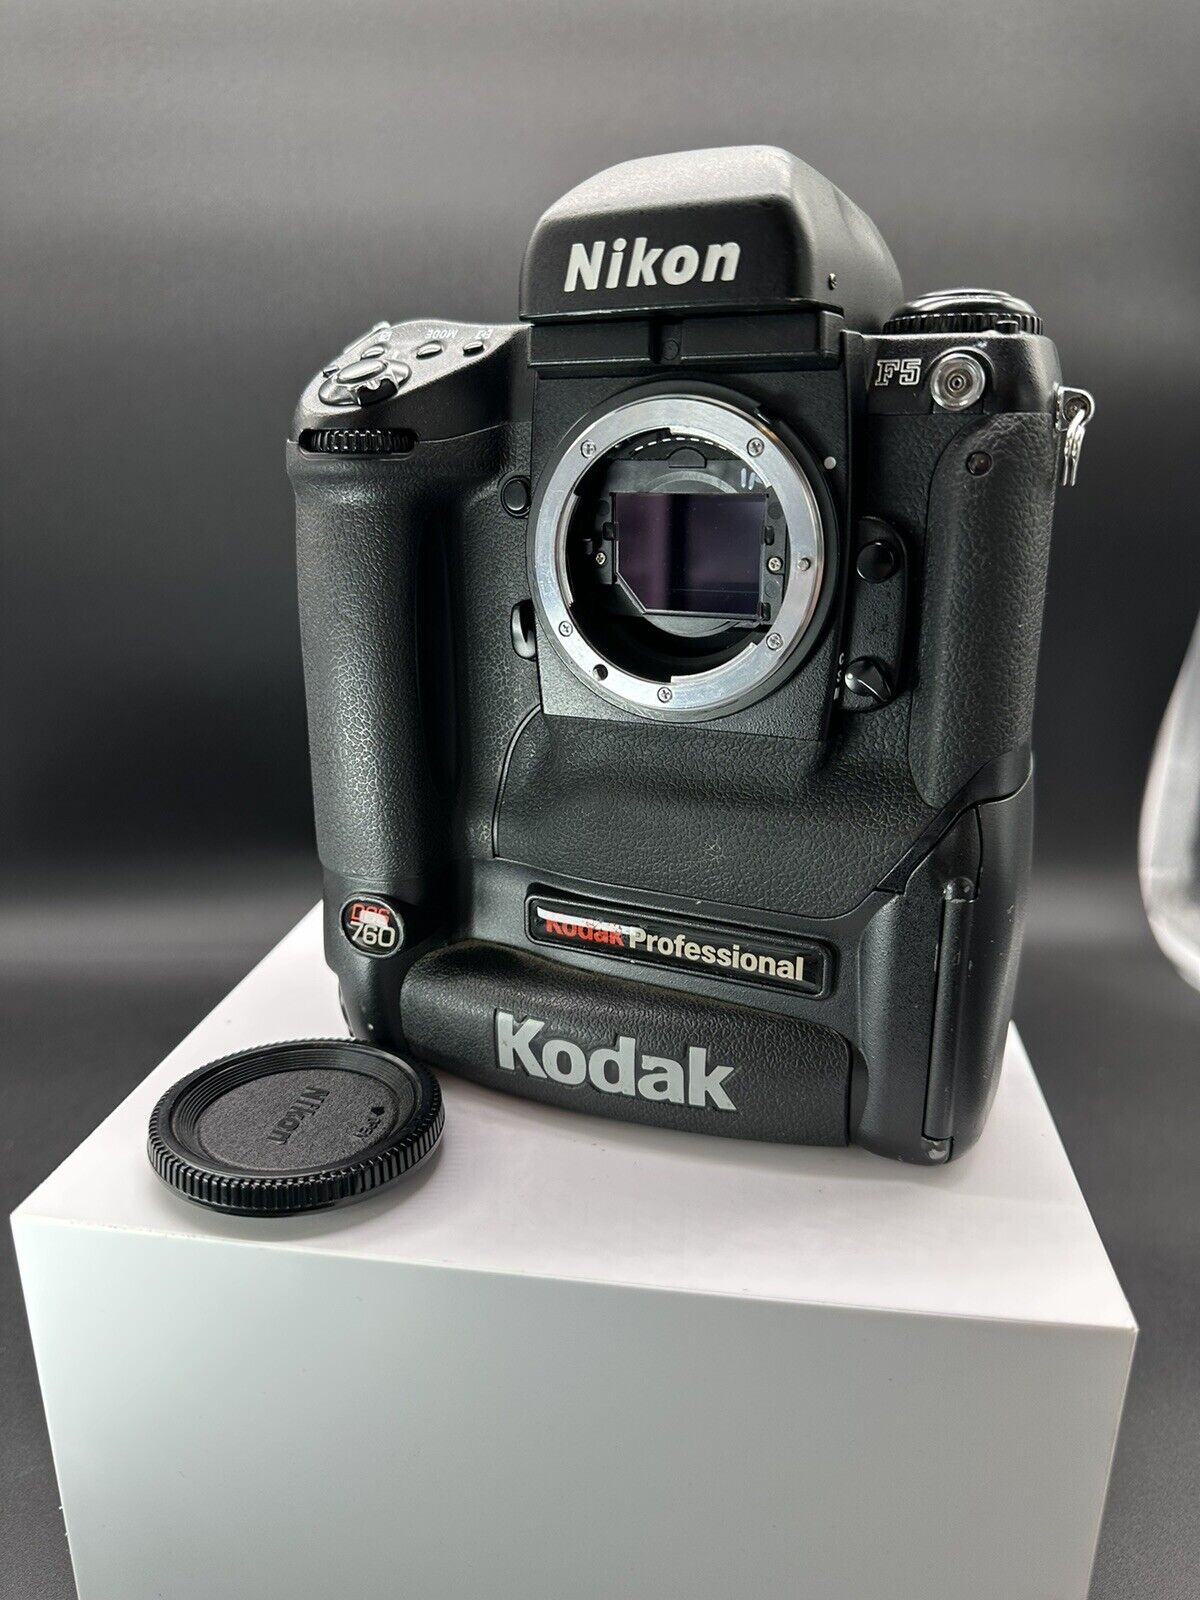 Kodak Professional DCS 760C Nikon F5 Body DSLR